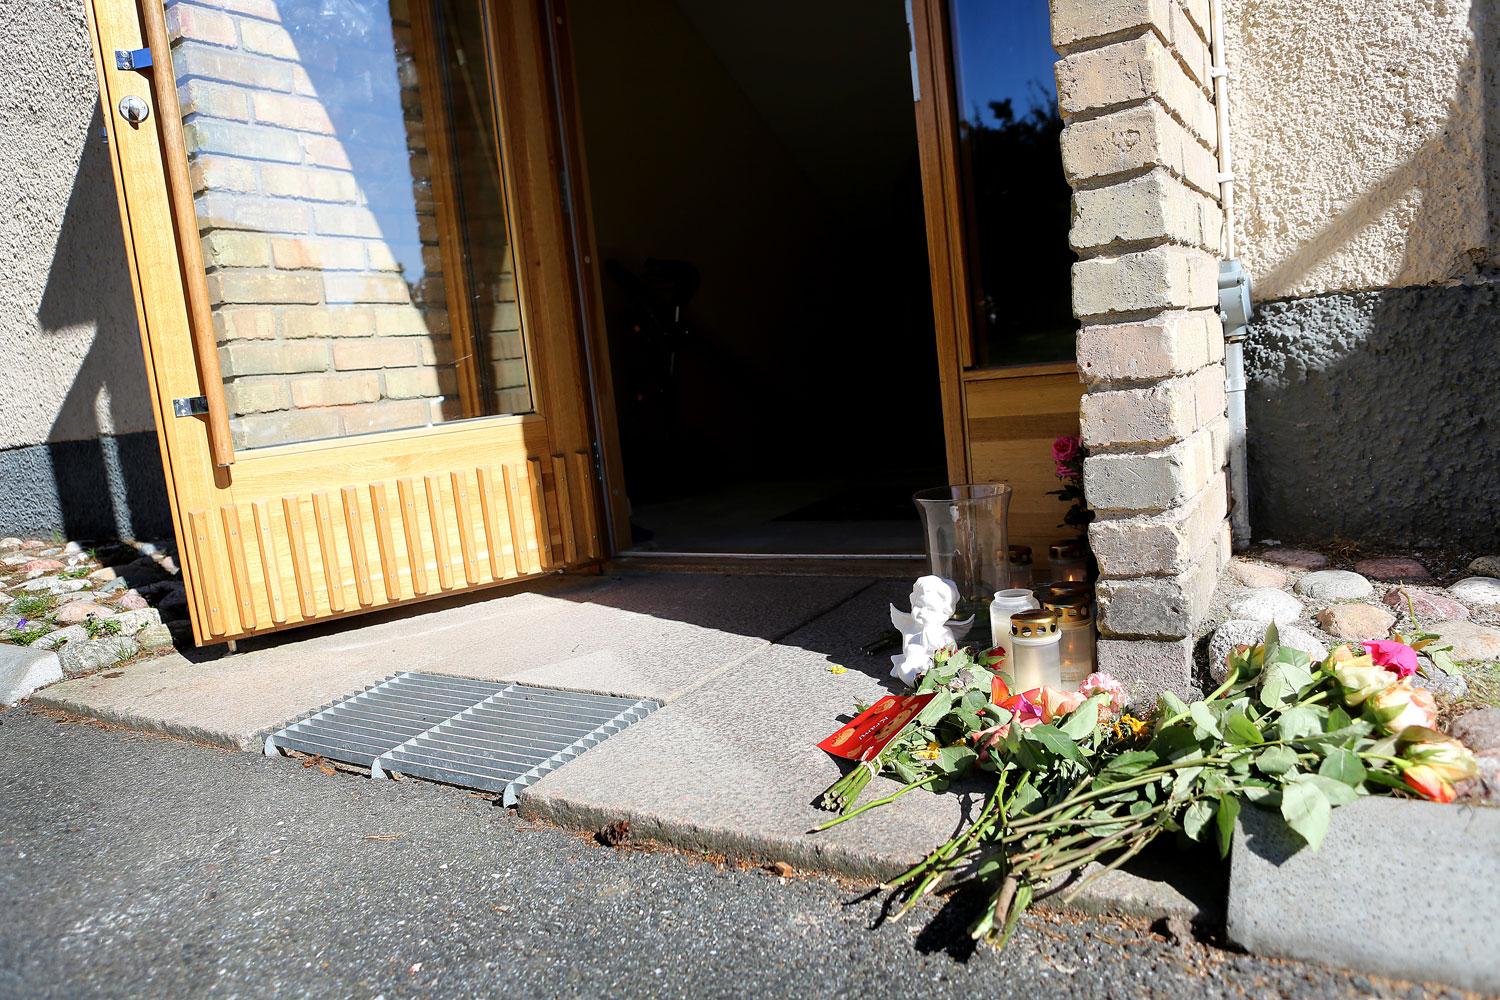 Mordet på en 13-årig flicka i Täby har nu väckt Linköpingspolisens intresse.
– När det inträffar något grovt brott mot barn är det intressant för vår utredning, säger Linköpingspolisens utredare Jan Staaf.